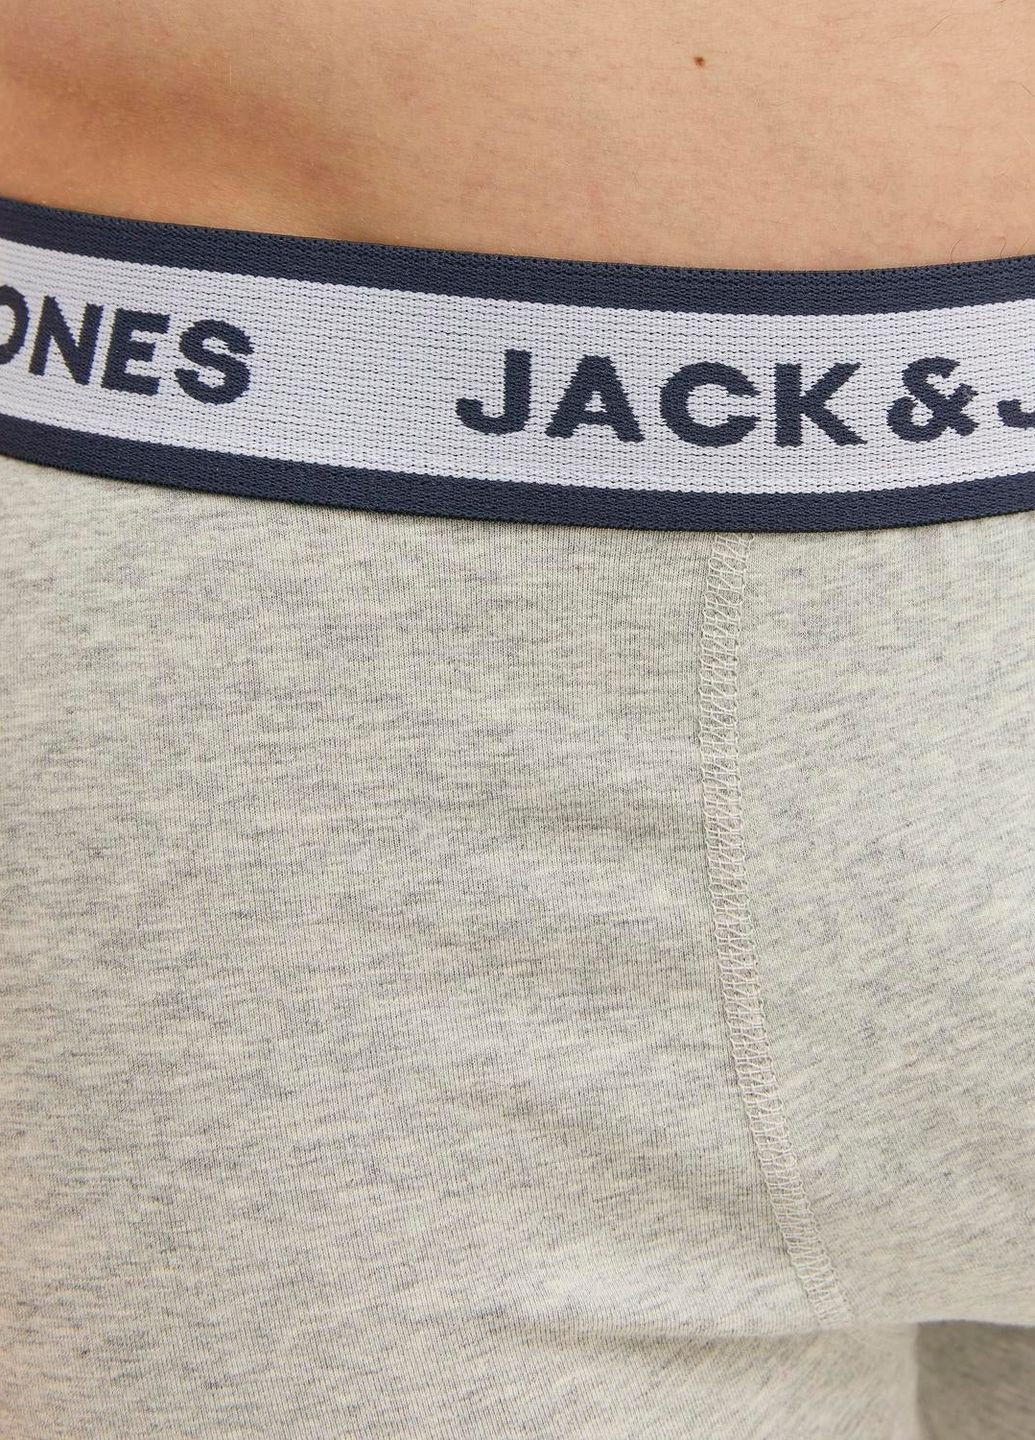 Комплект трусов,темно-синий-белый-серый,JACK&JONES Jack & Jones (274235725)